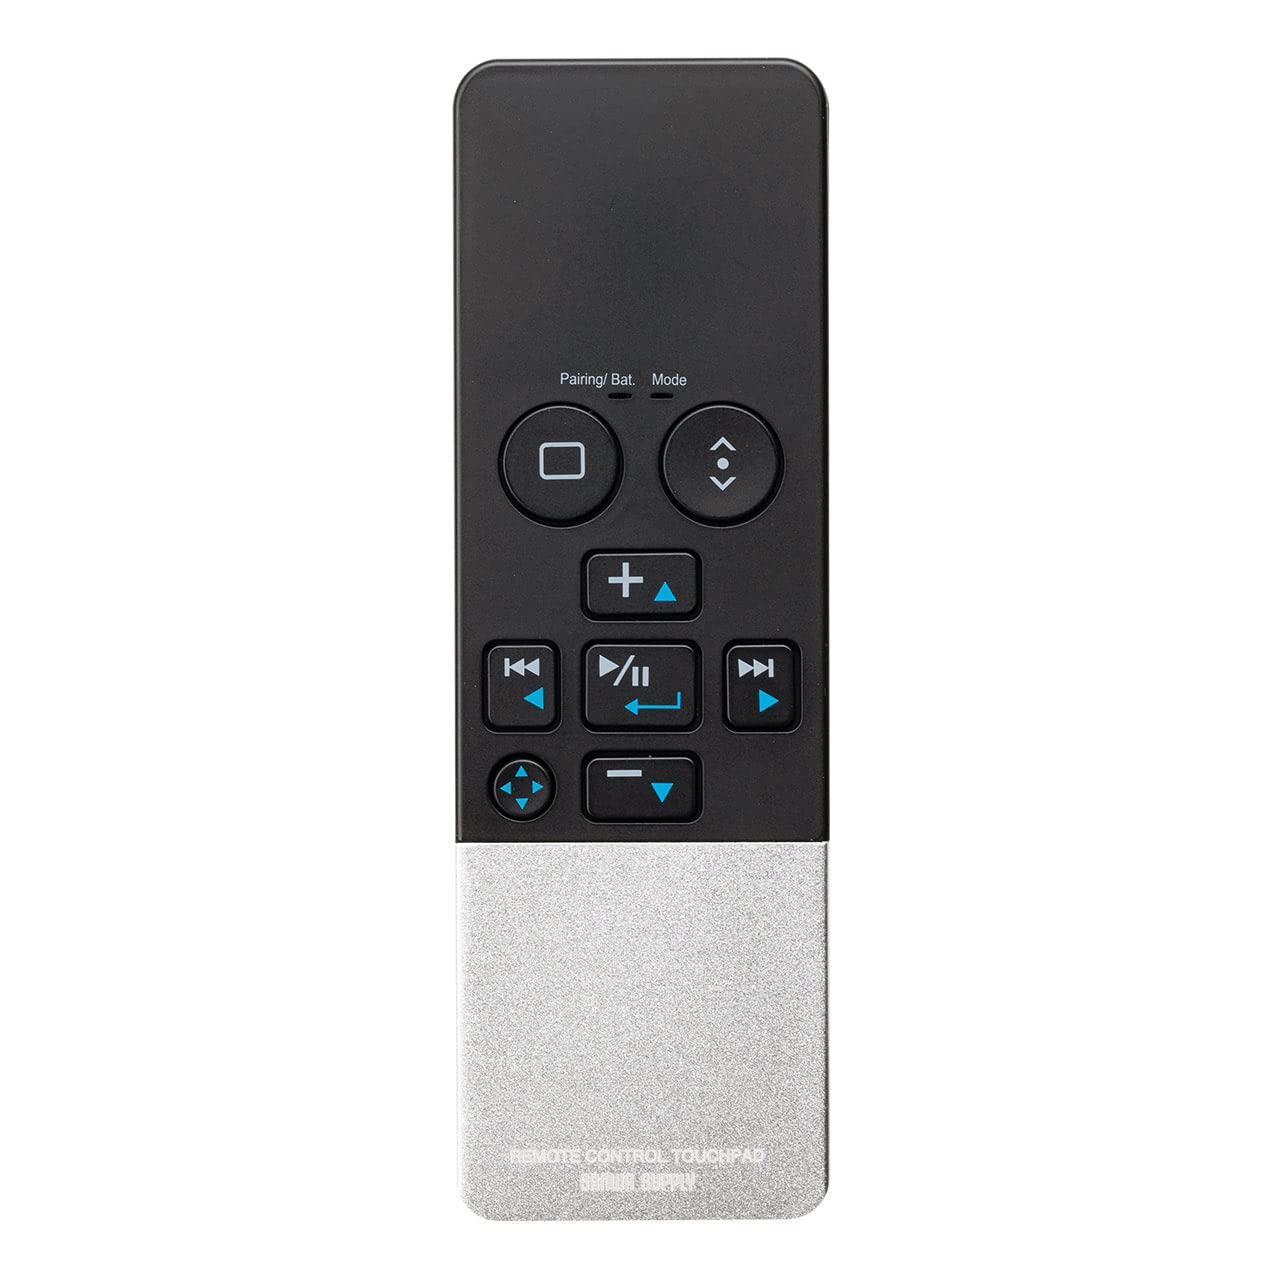 サンワダイレクト 空中マウス Bluetooth ごろ寝マウス タッチパッド付き 充電式 静音 パワーポイント リモコン 400-MABT188